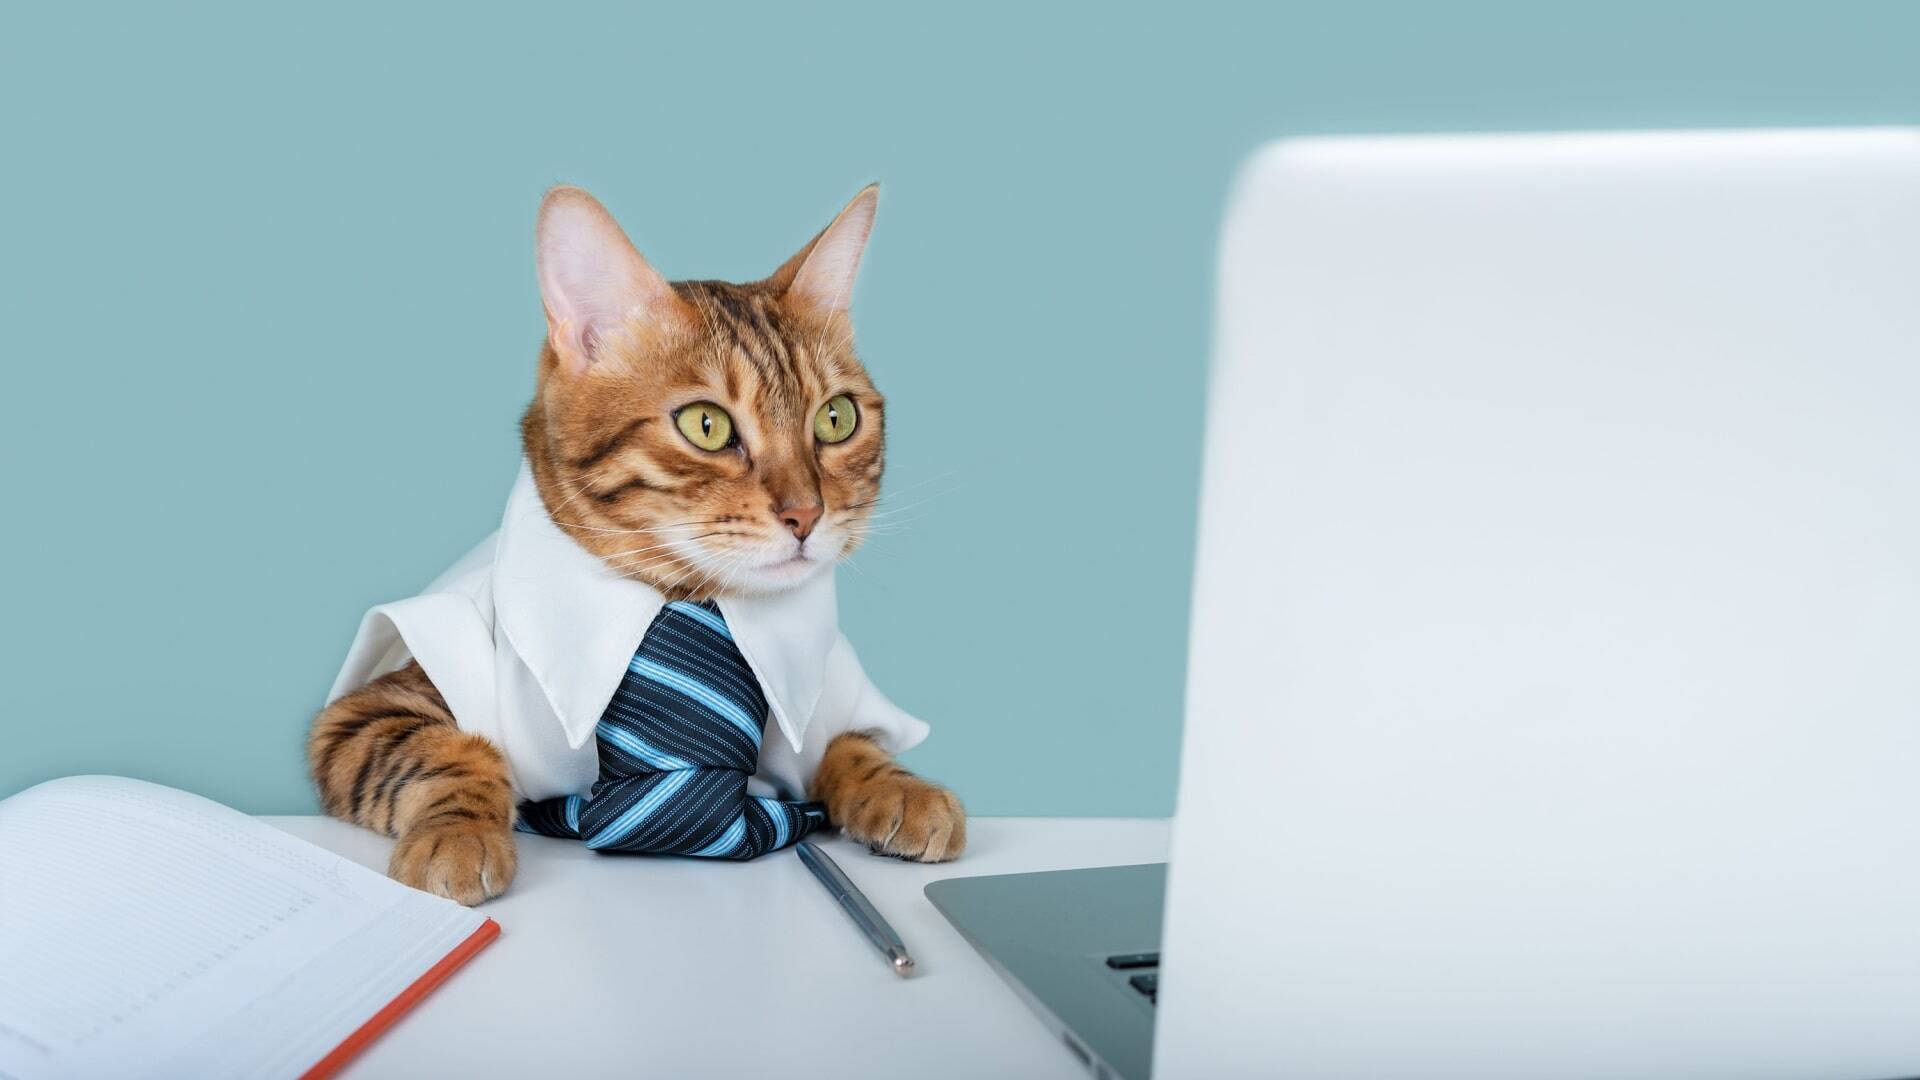 cat in a blue tie near a laptop